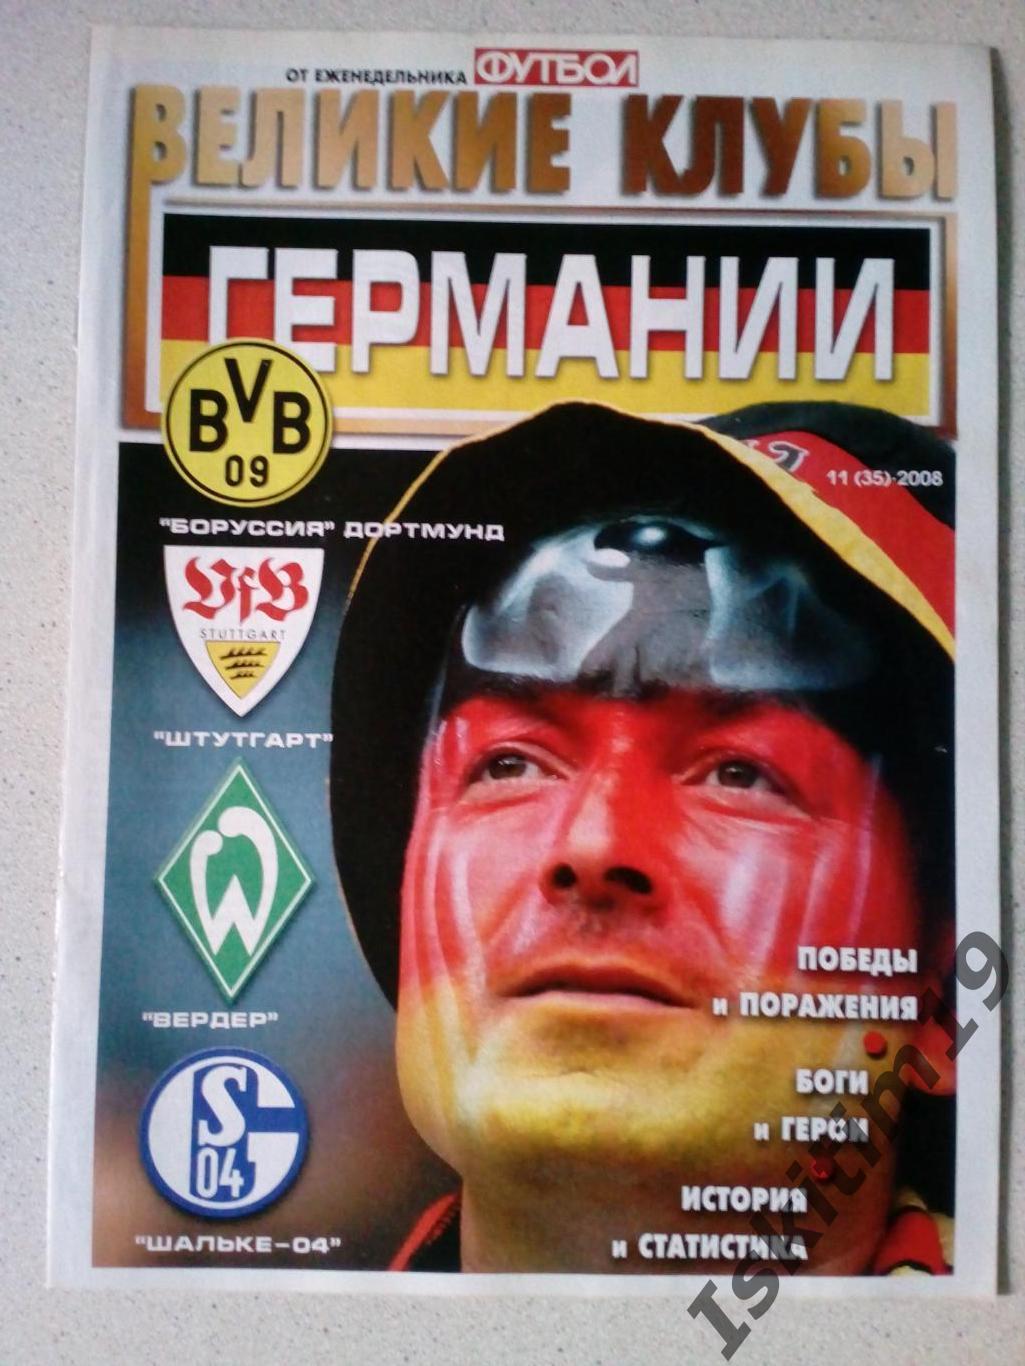 Великие клубы Германии: Боруссия Дортмунд, Штутгарт, Вердер, Шальке-04. 2008 год